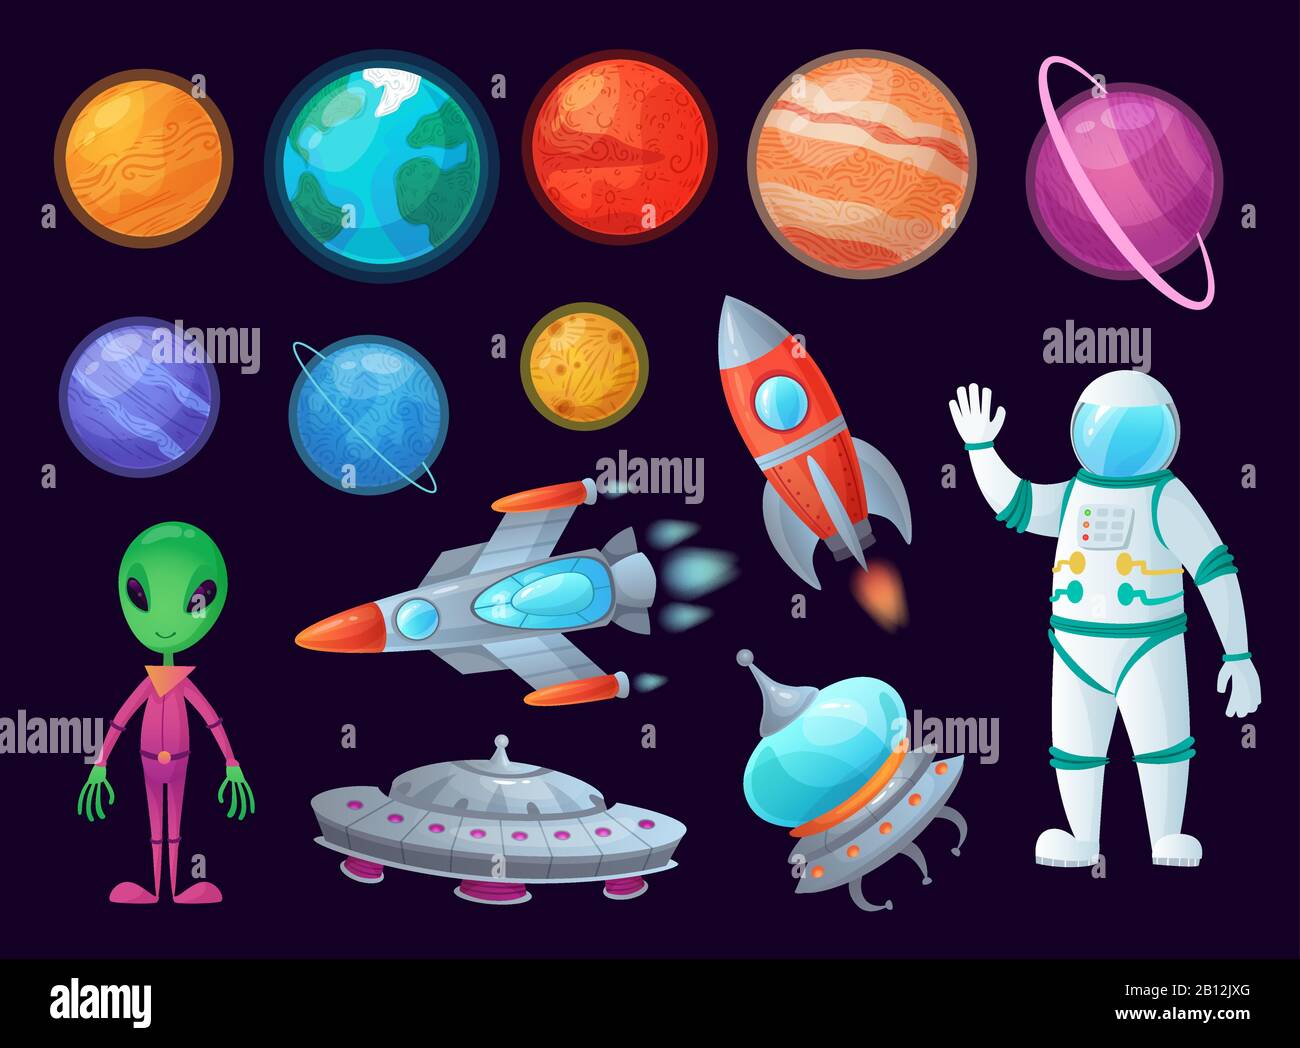 Elementos de espacio. ovni alienígena, planeta universo y cohetes de misiles. Planetas juego diseño dibujos animados gráficos vector conjunto de elementos Ilustración del Vector